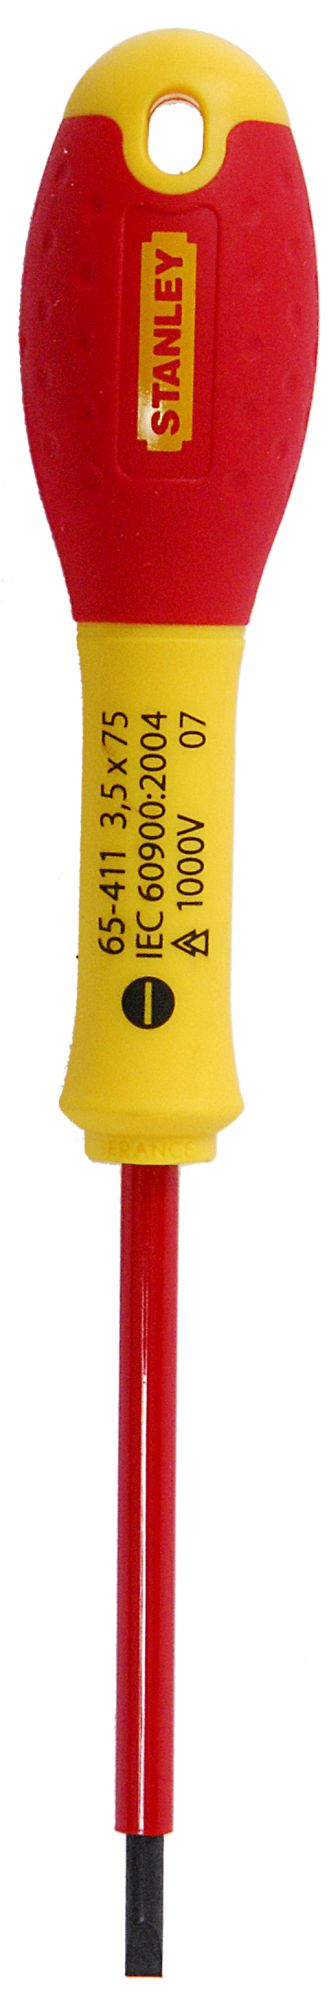 Destornillador FatMax® Plana 3,5 X 75 mm SBD-1-65-411 | DESTORNILLADORES